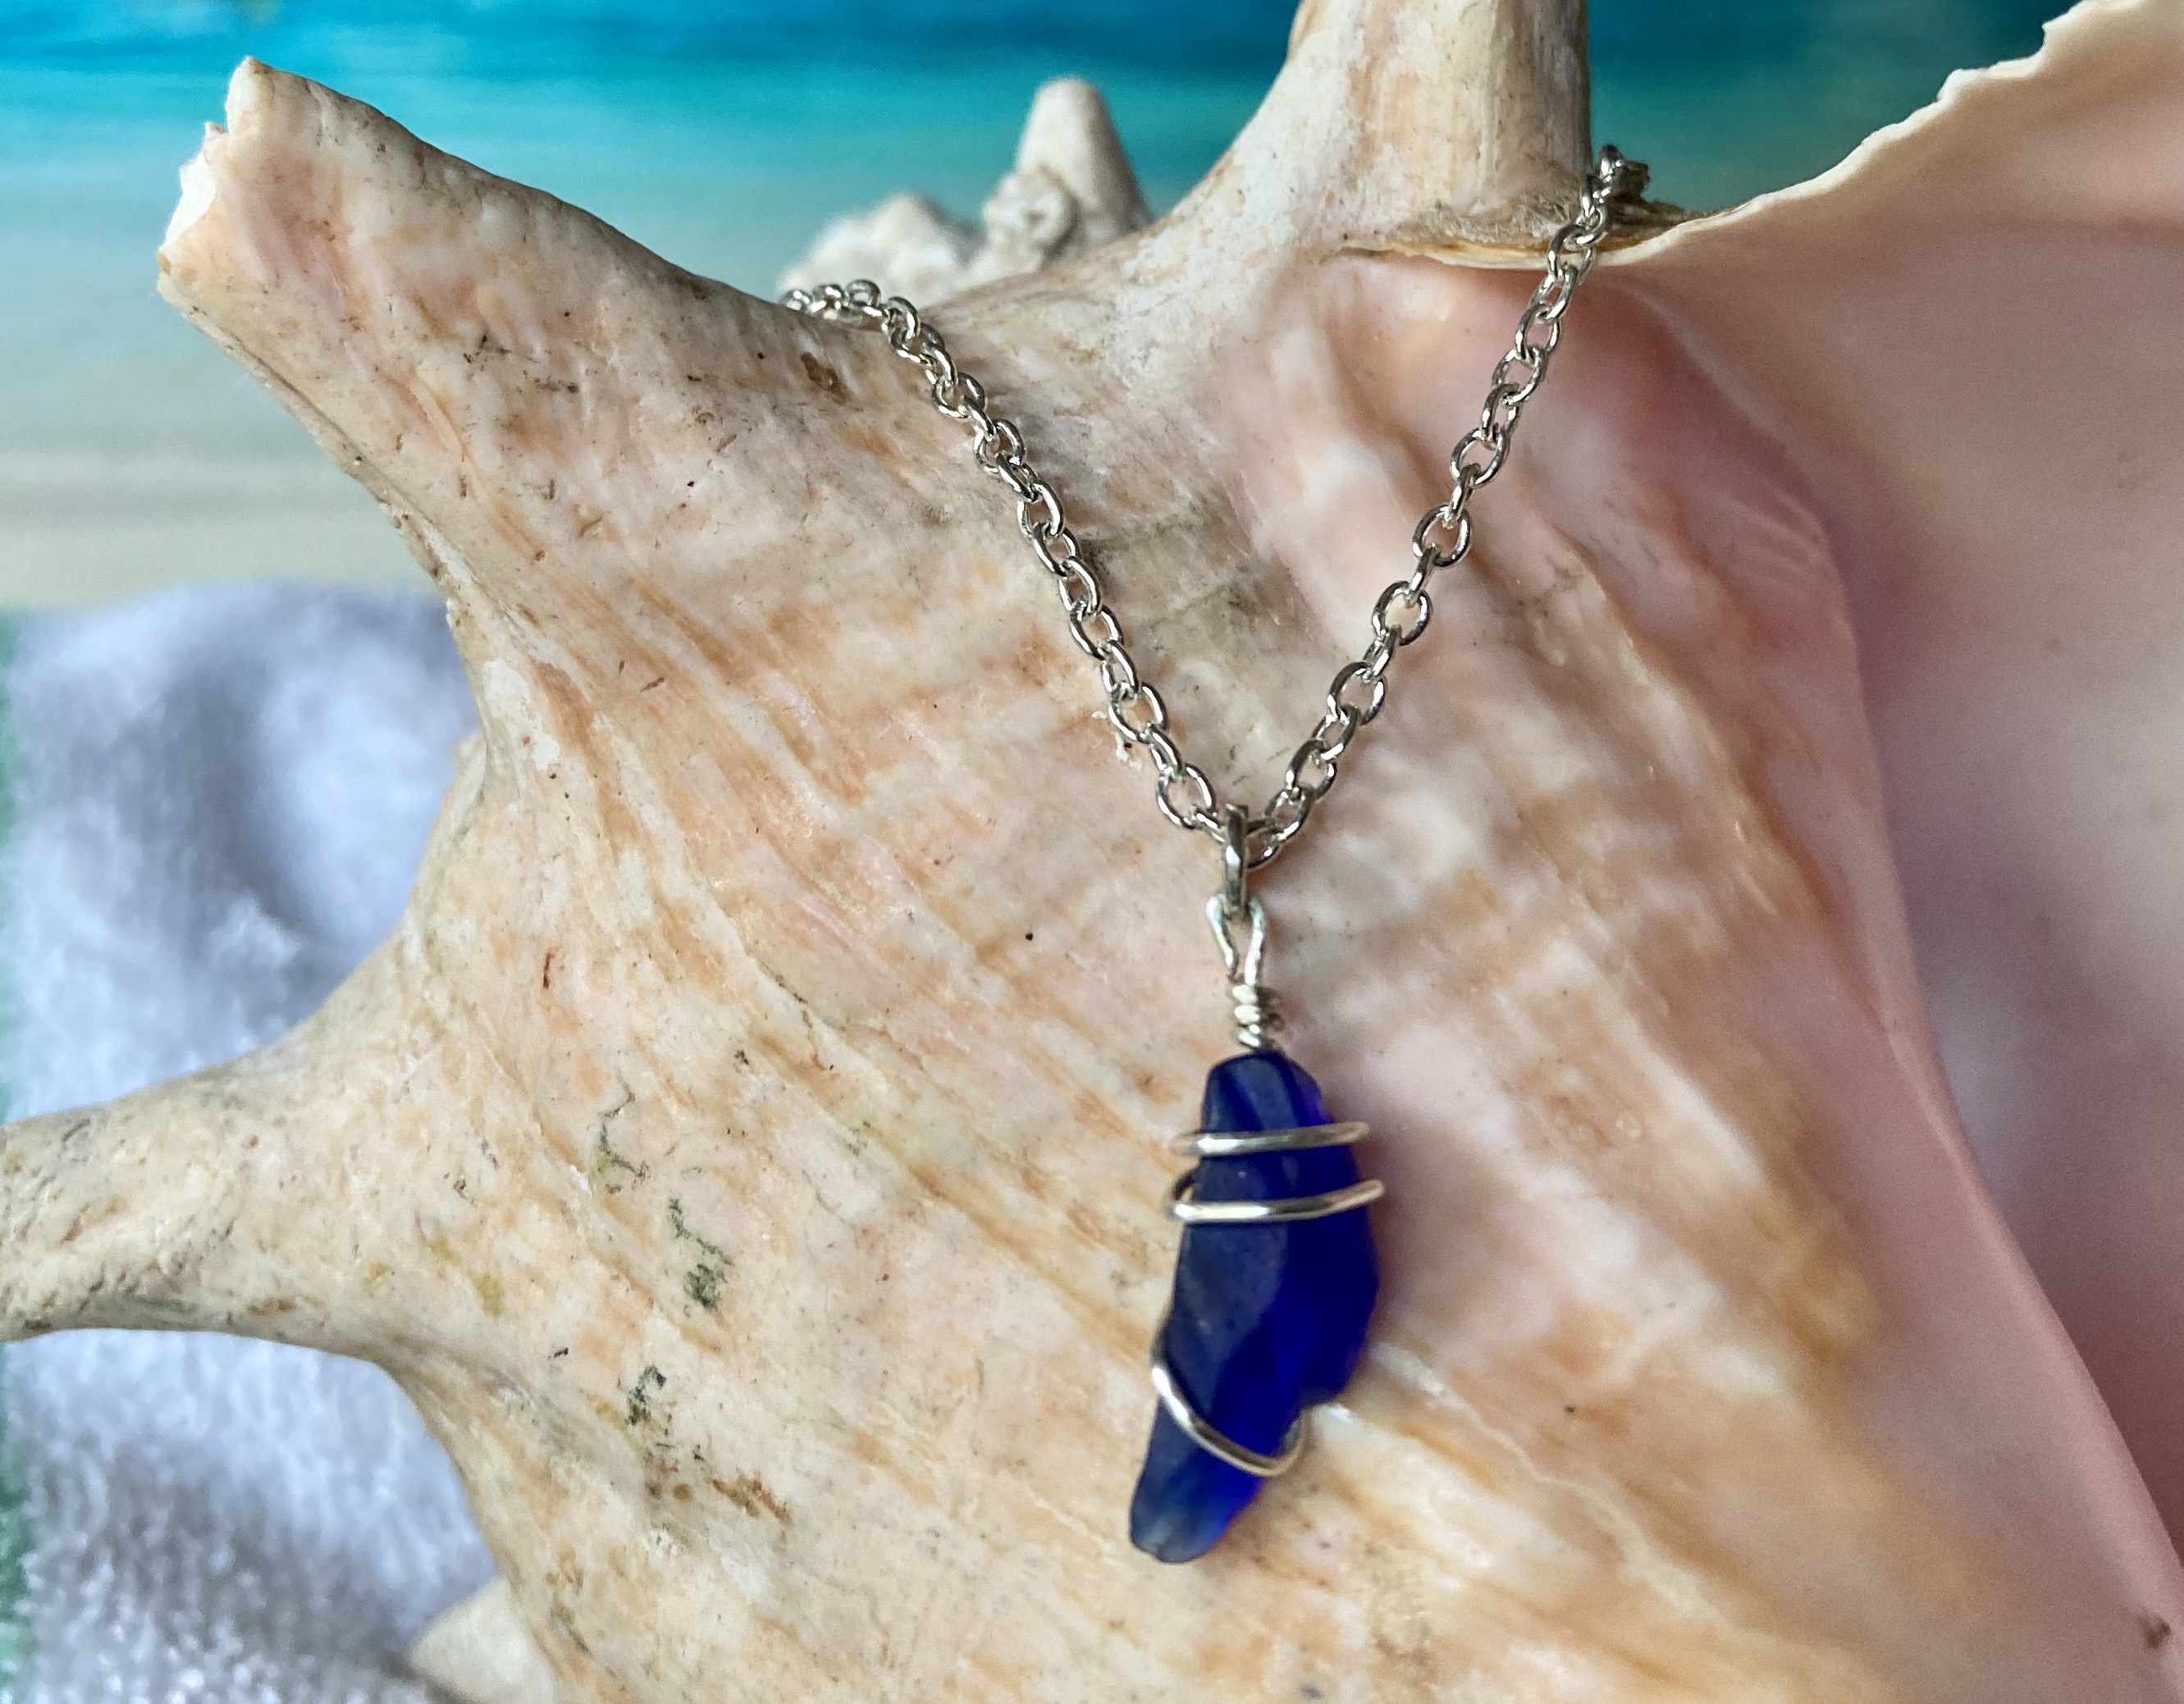 Rare bark blue seaglass necklace